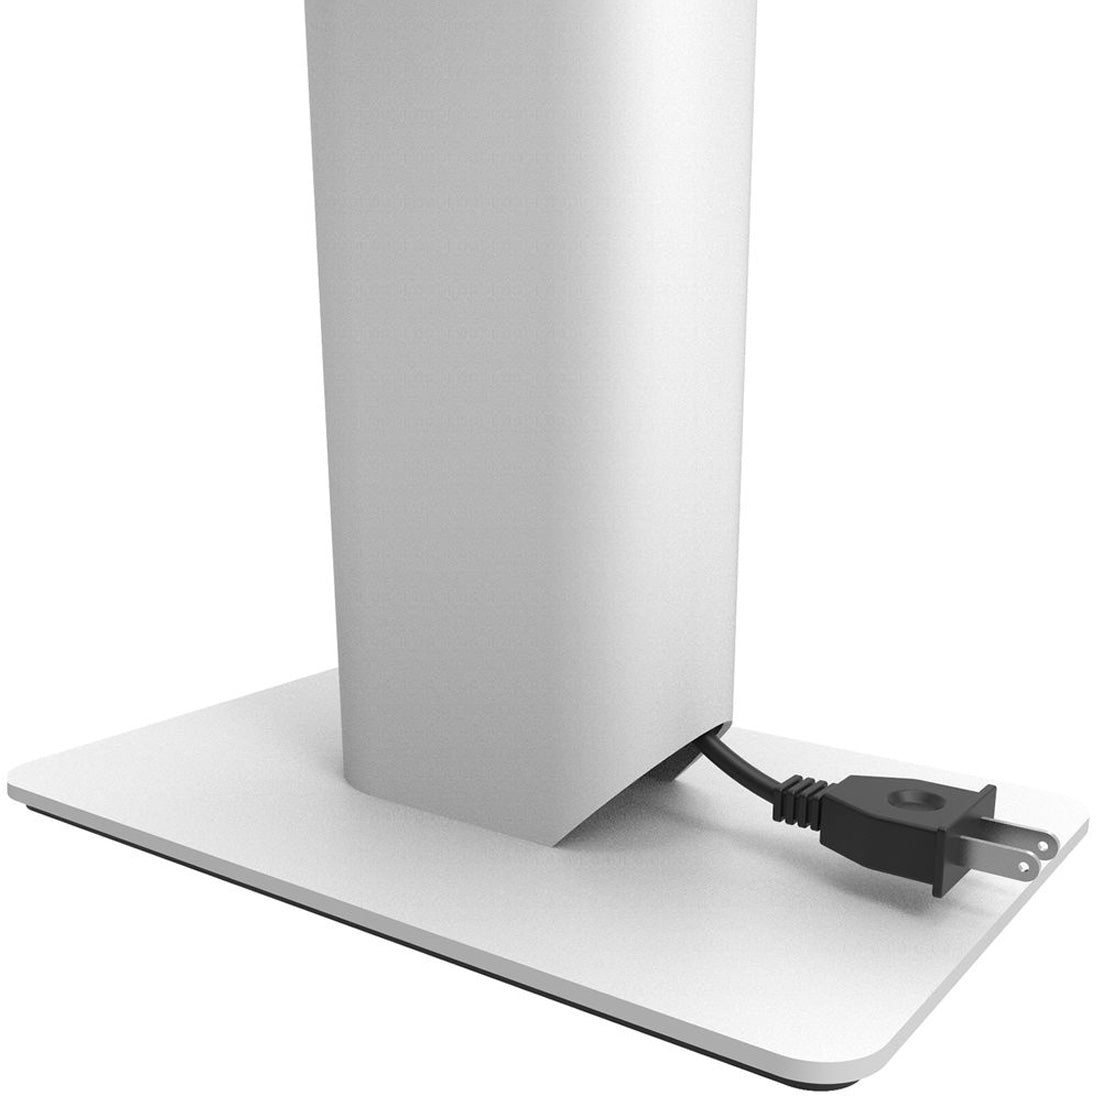 Kanto SP9W 9" SP Desktop Speaker Stands - White